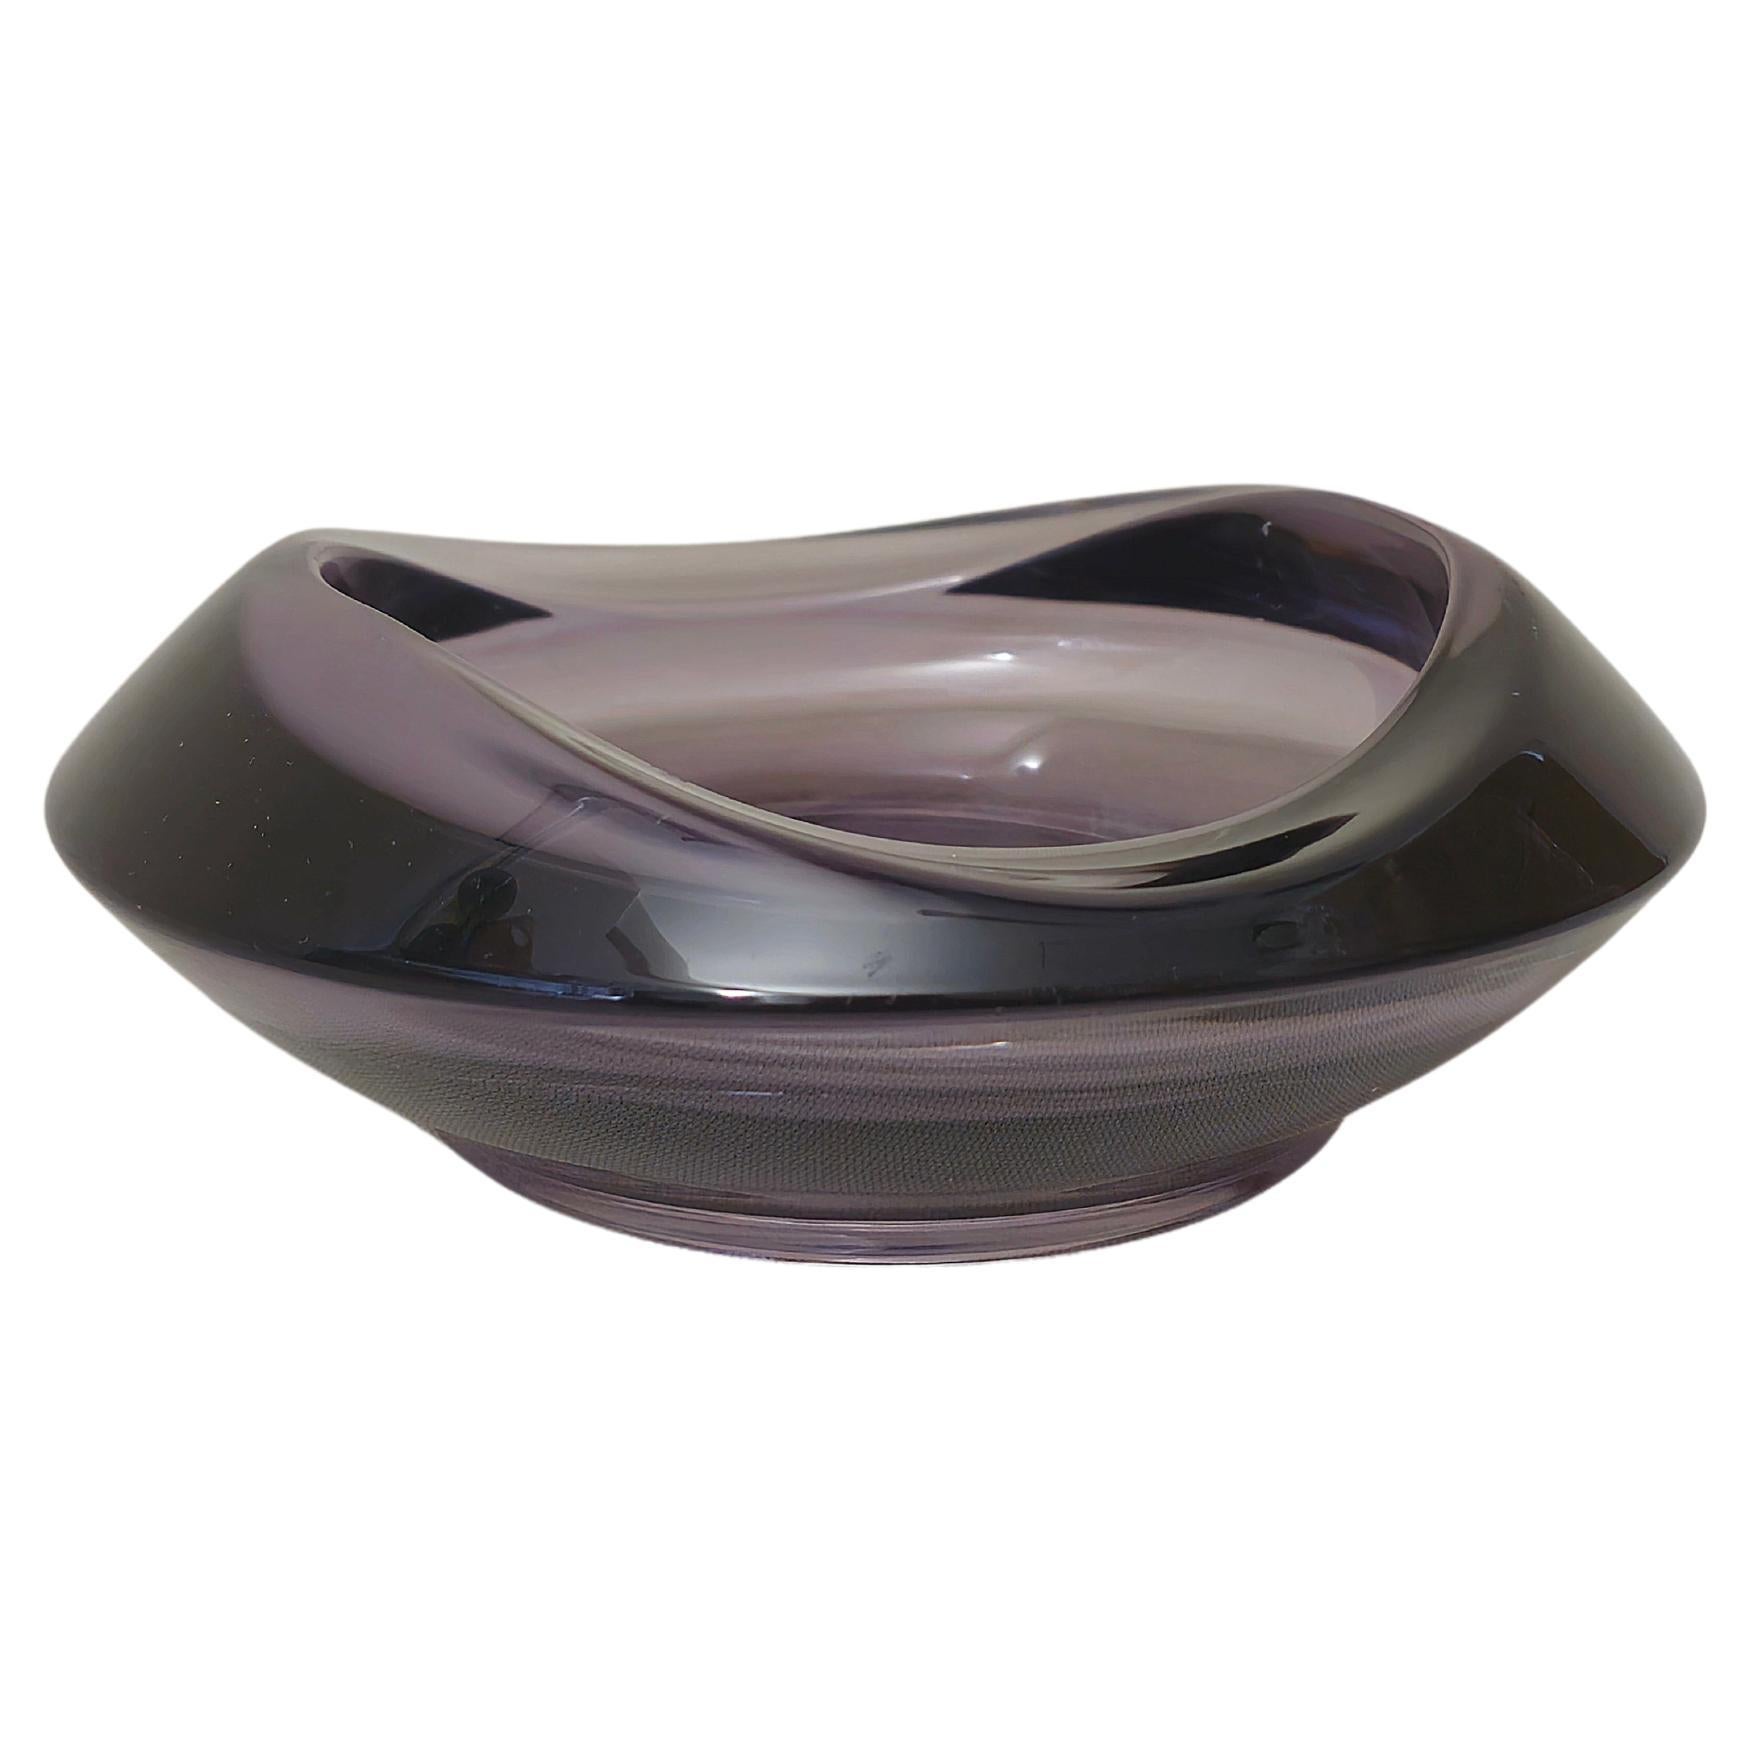 Vide-Poche Decorative Object Violet Murano Glass Midcentury Italian Design 1970s For Sale